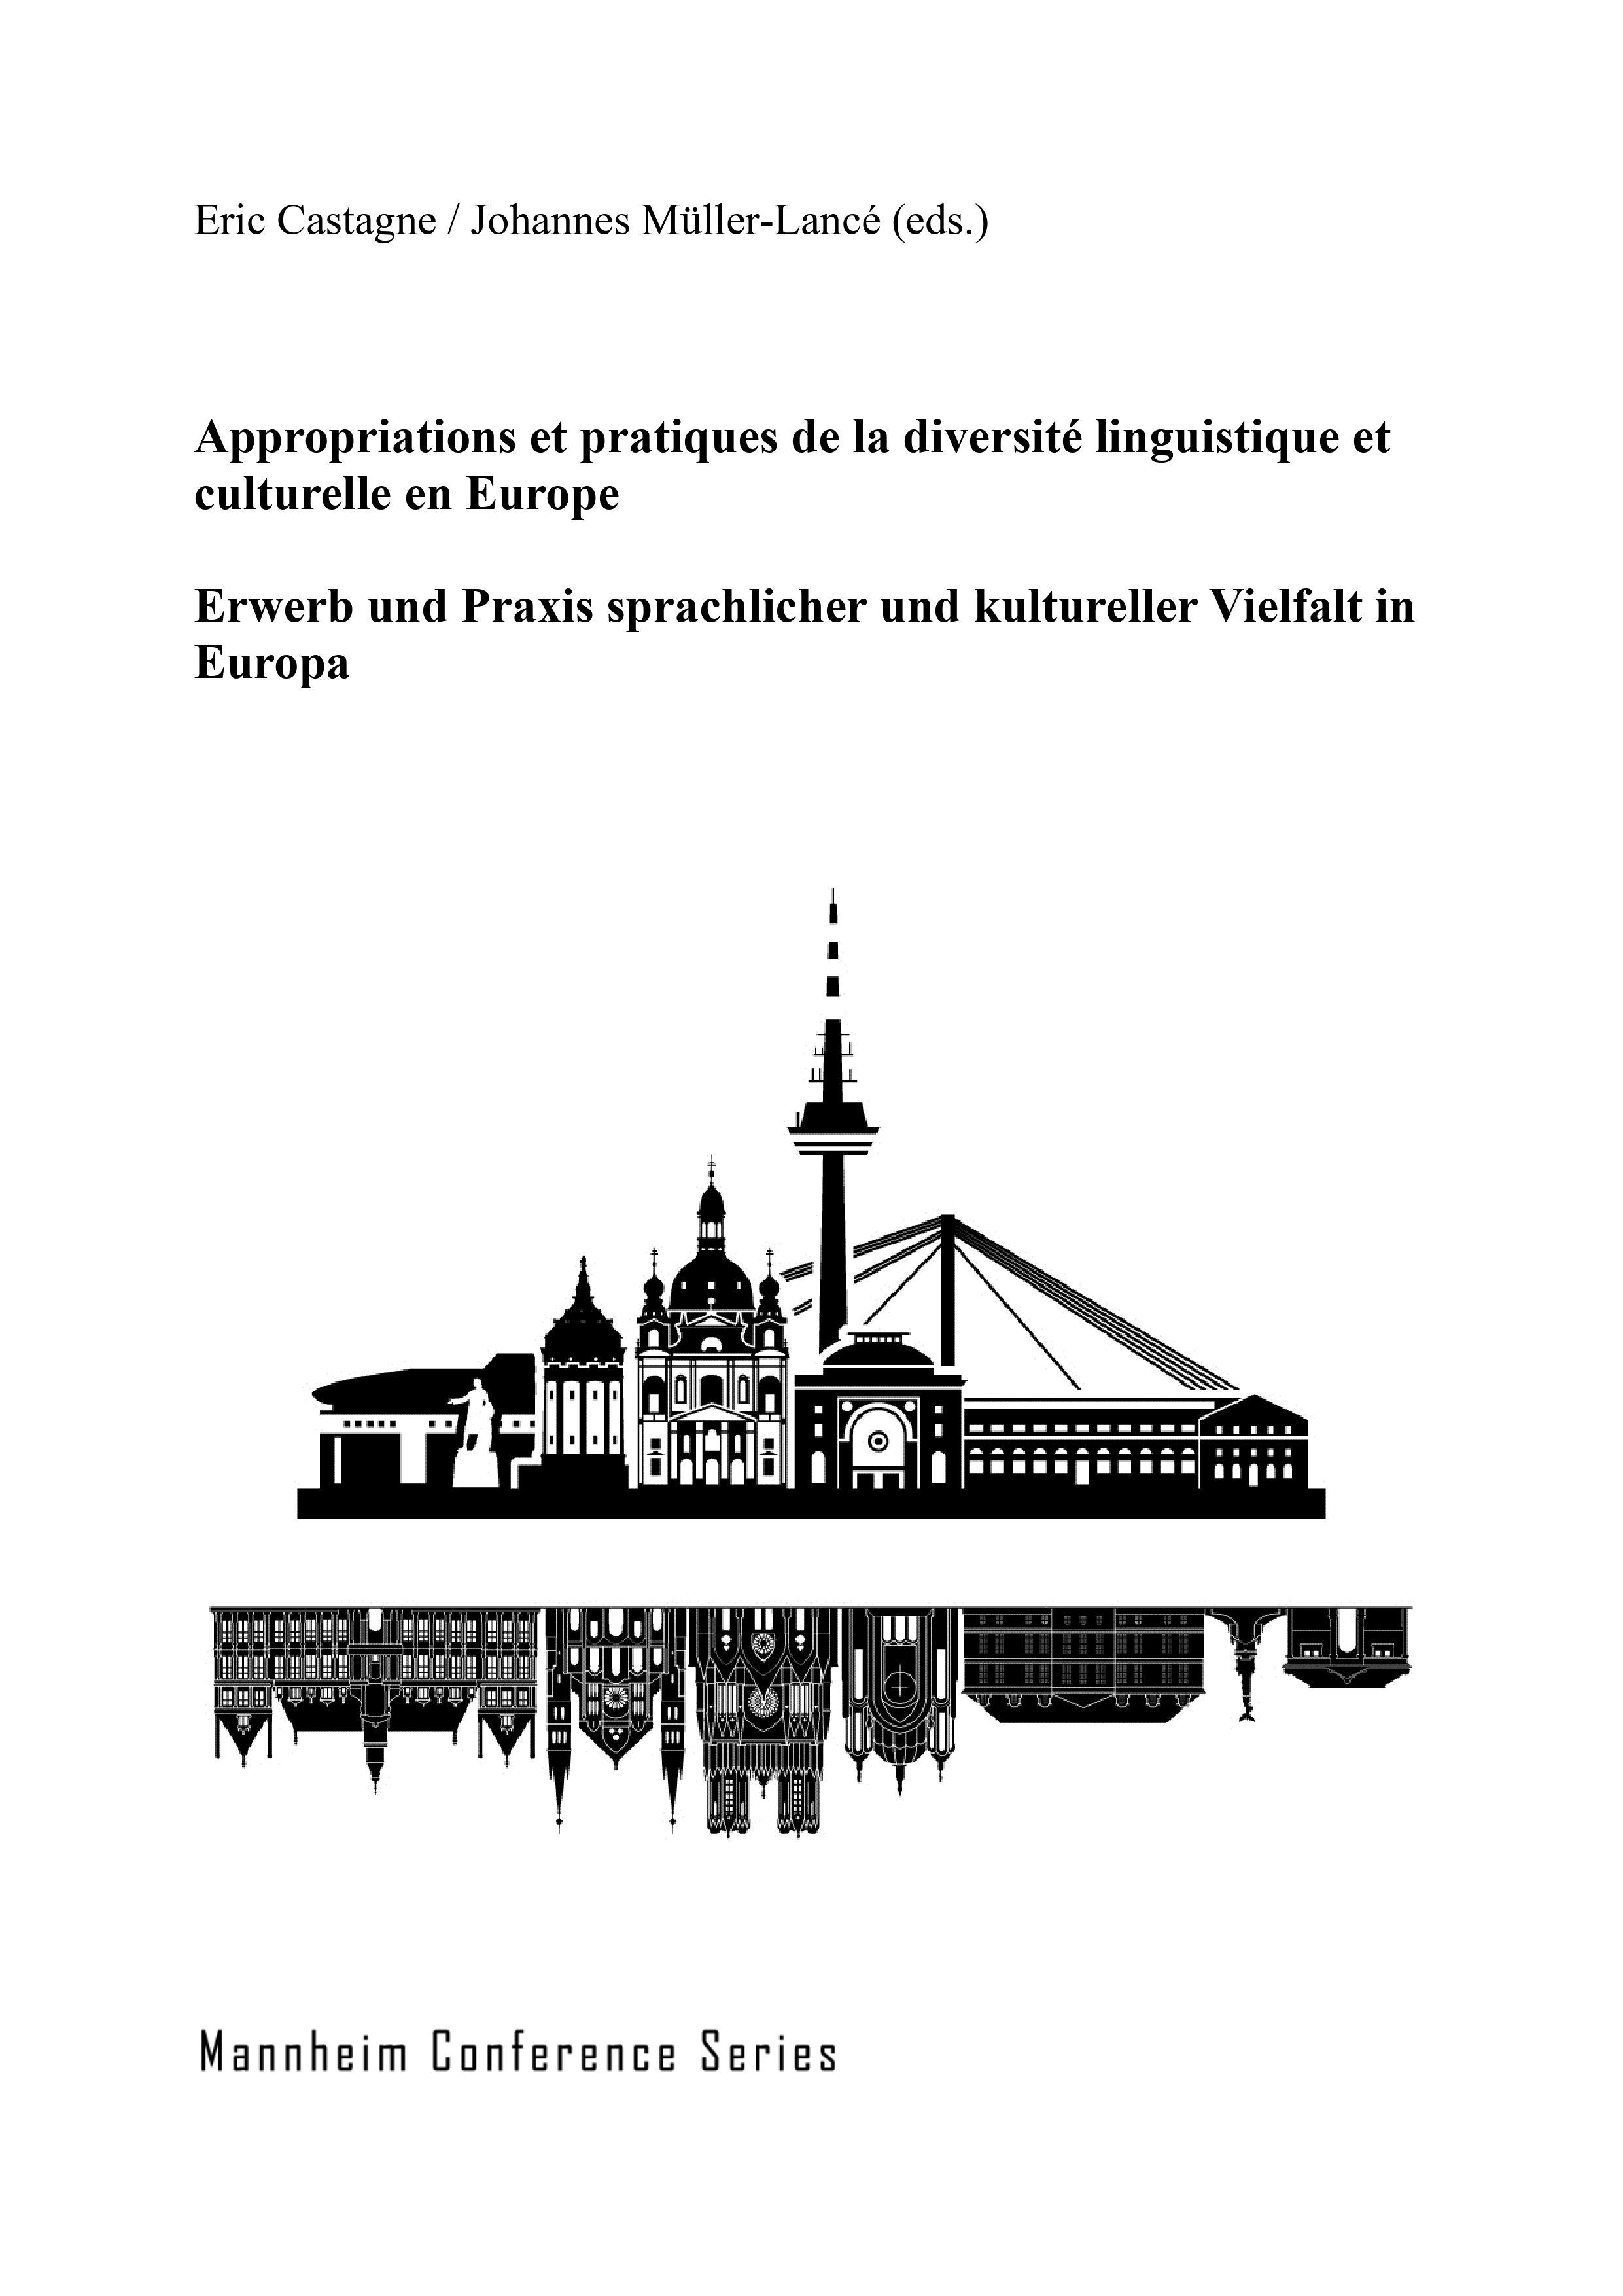 Titelseite des Buches zeigt die Skyline von Mannheim und Reims. Zusätzlich beinhaltet sie den Titel, die Namen der Herausgeber sowie den Namen der Konferenzreihe.